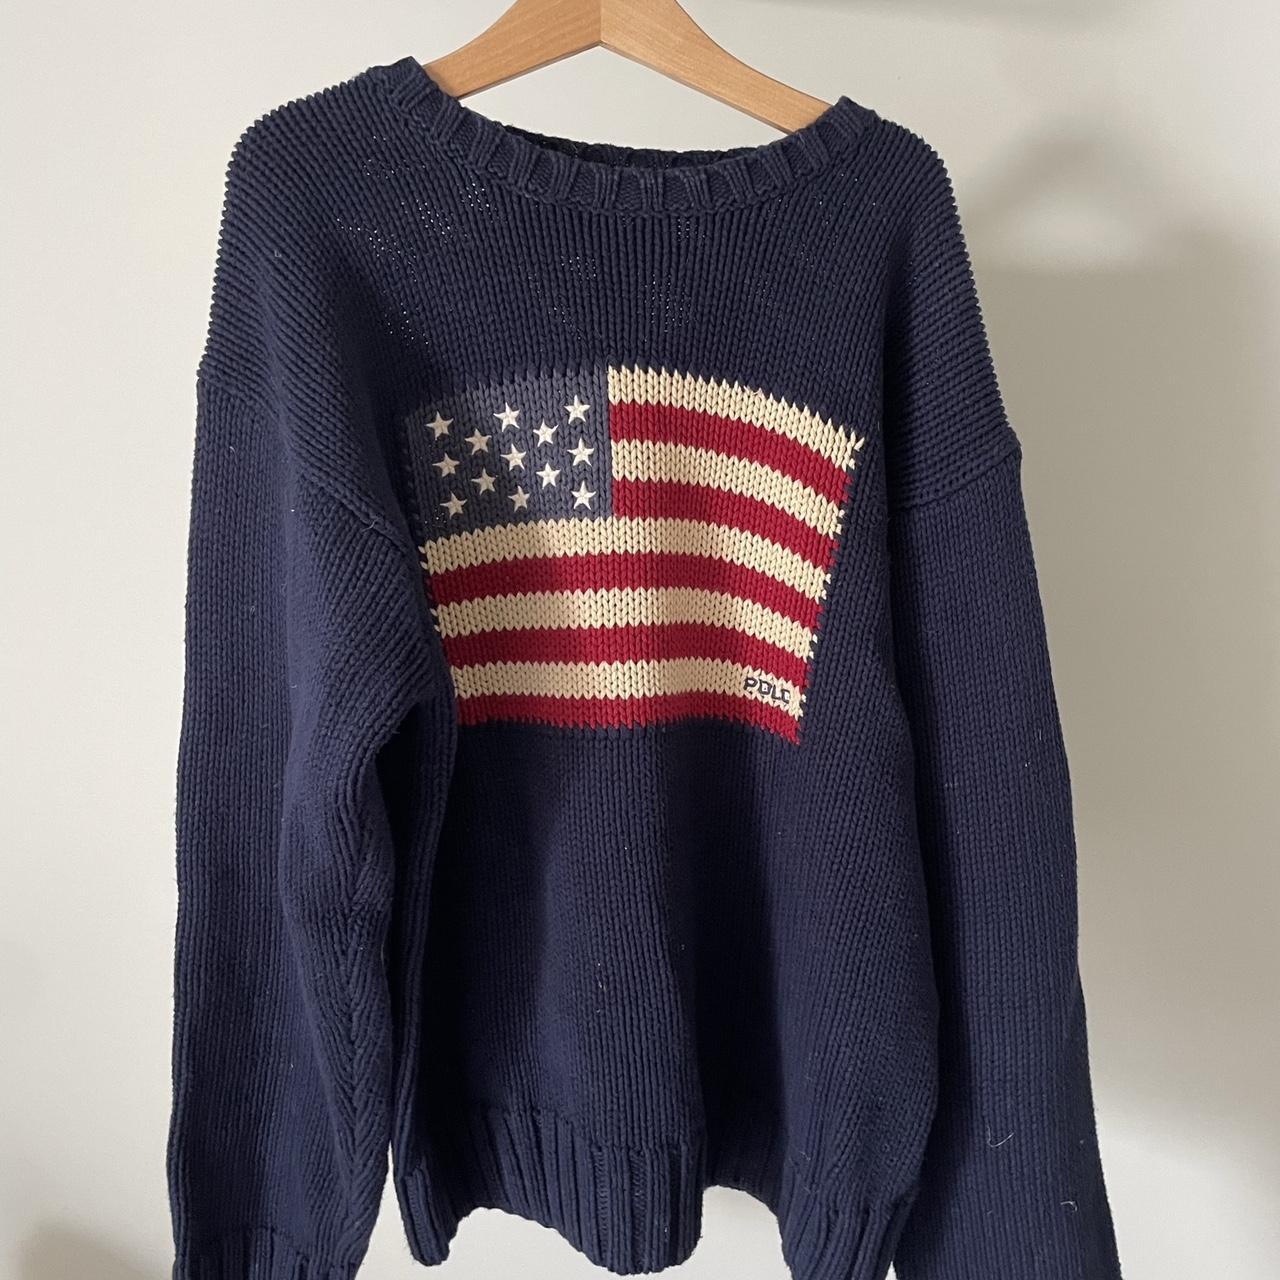 Polo Ralph lauren, Navy knit USA jumper, woman’s... - Depop